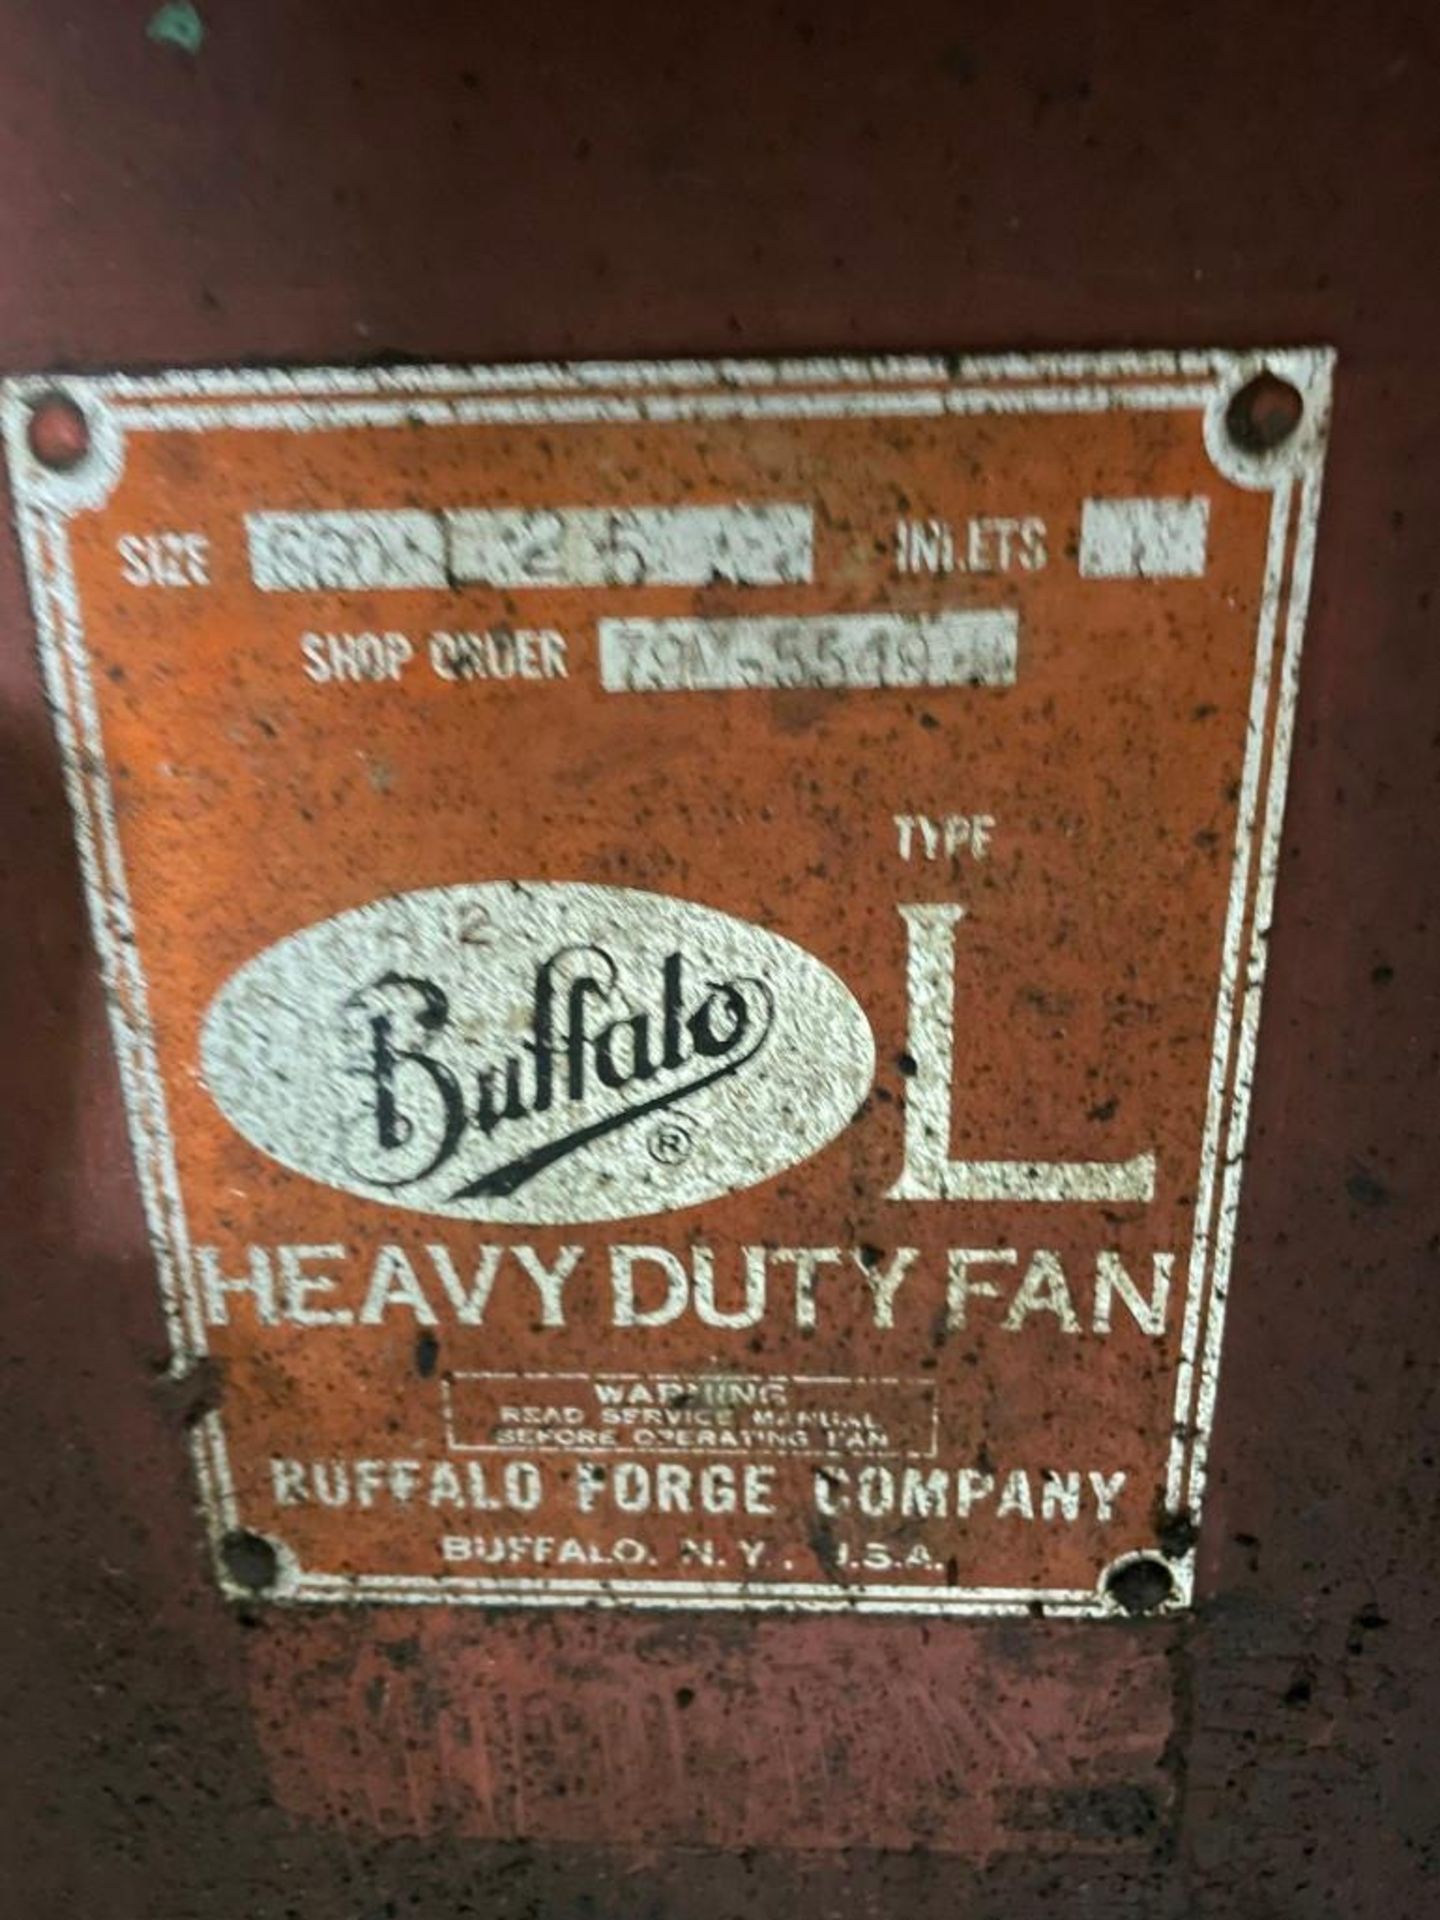 Buffalo Forge Company Heavy Duty Fan Blower 400 Horsepower Motor - Image 14 of 14